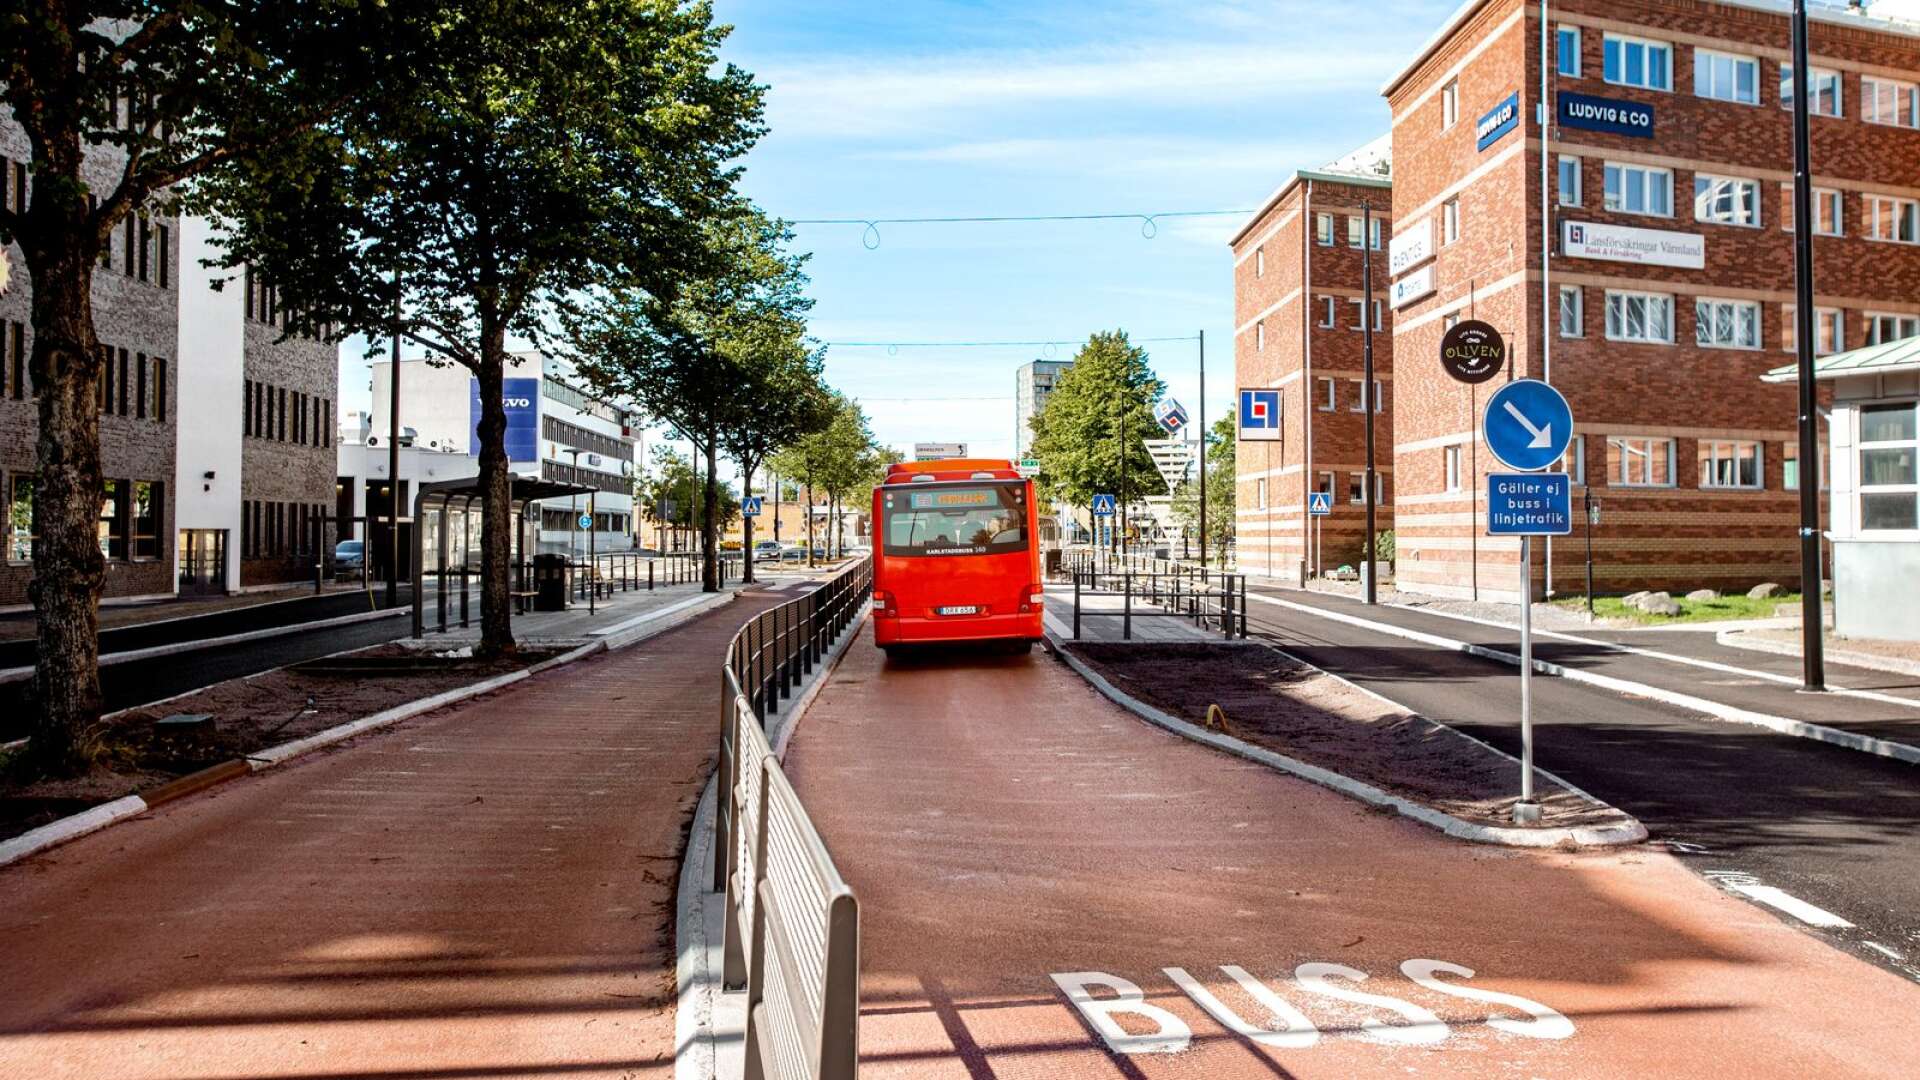 Äntligen en vackert rödmålad bussfil i mitten så bussen kan svänga vänster, en bred cykel- och gångväg och så två filer för biltrafik, skriver Per-Inge Lidén.